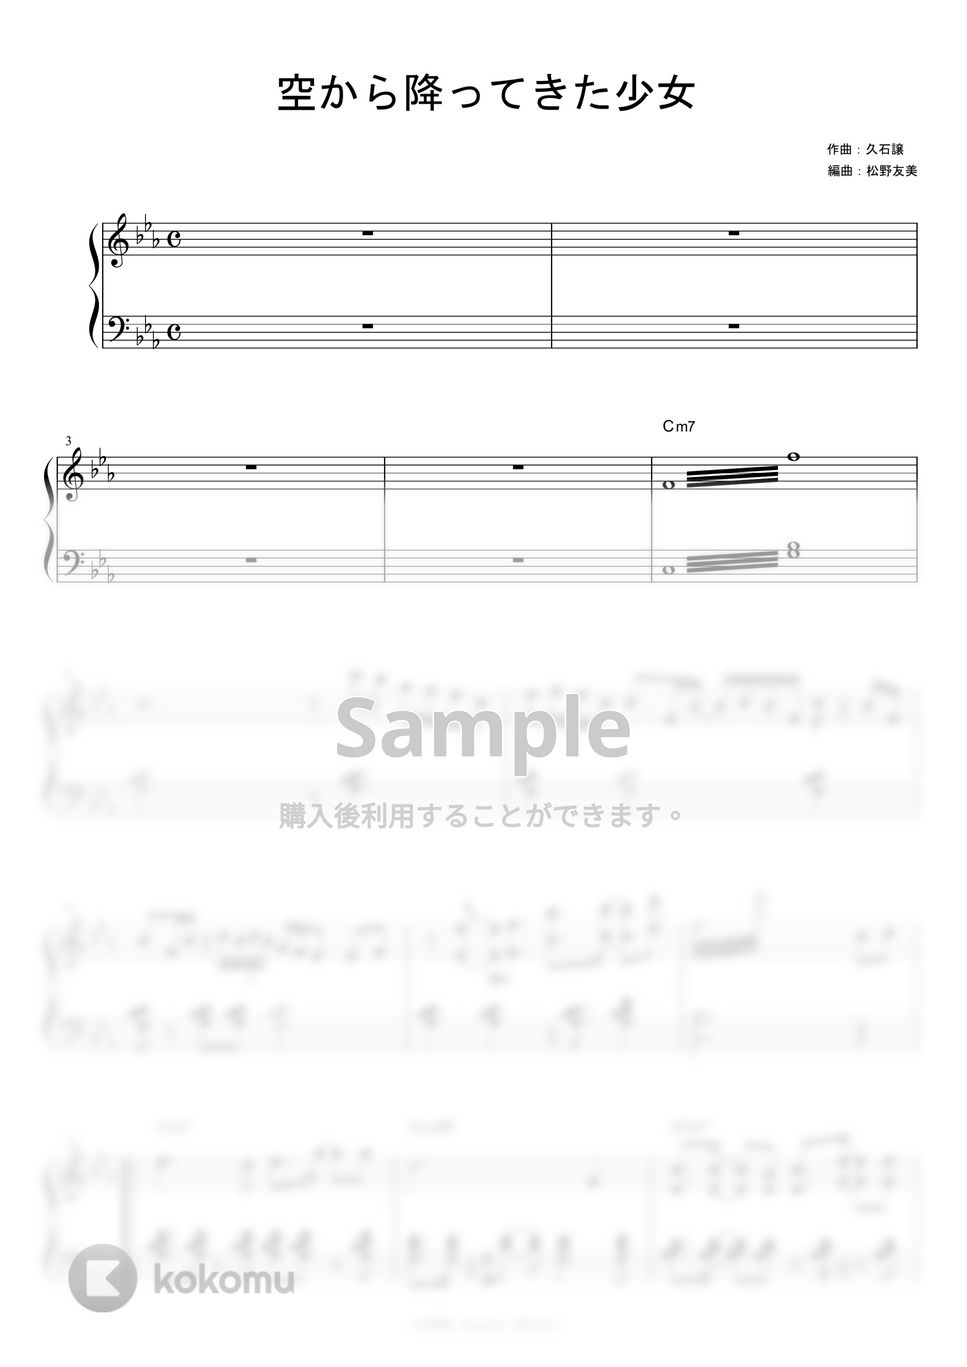 久石譲 - 空から降ってきた少女 (Jazz ver.) by piano*score